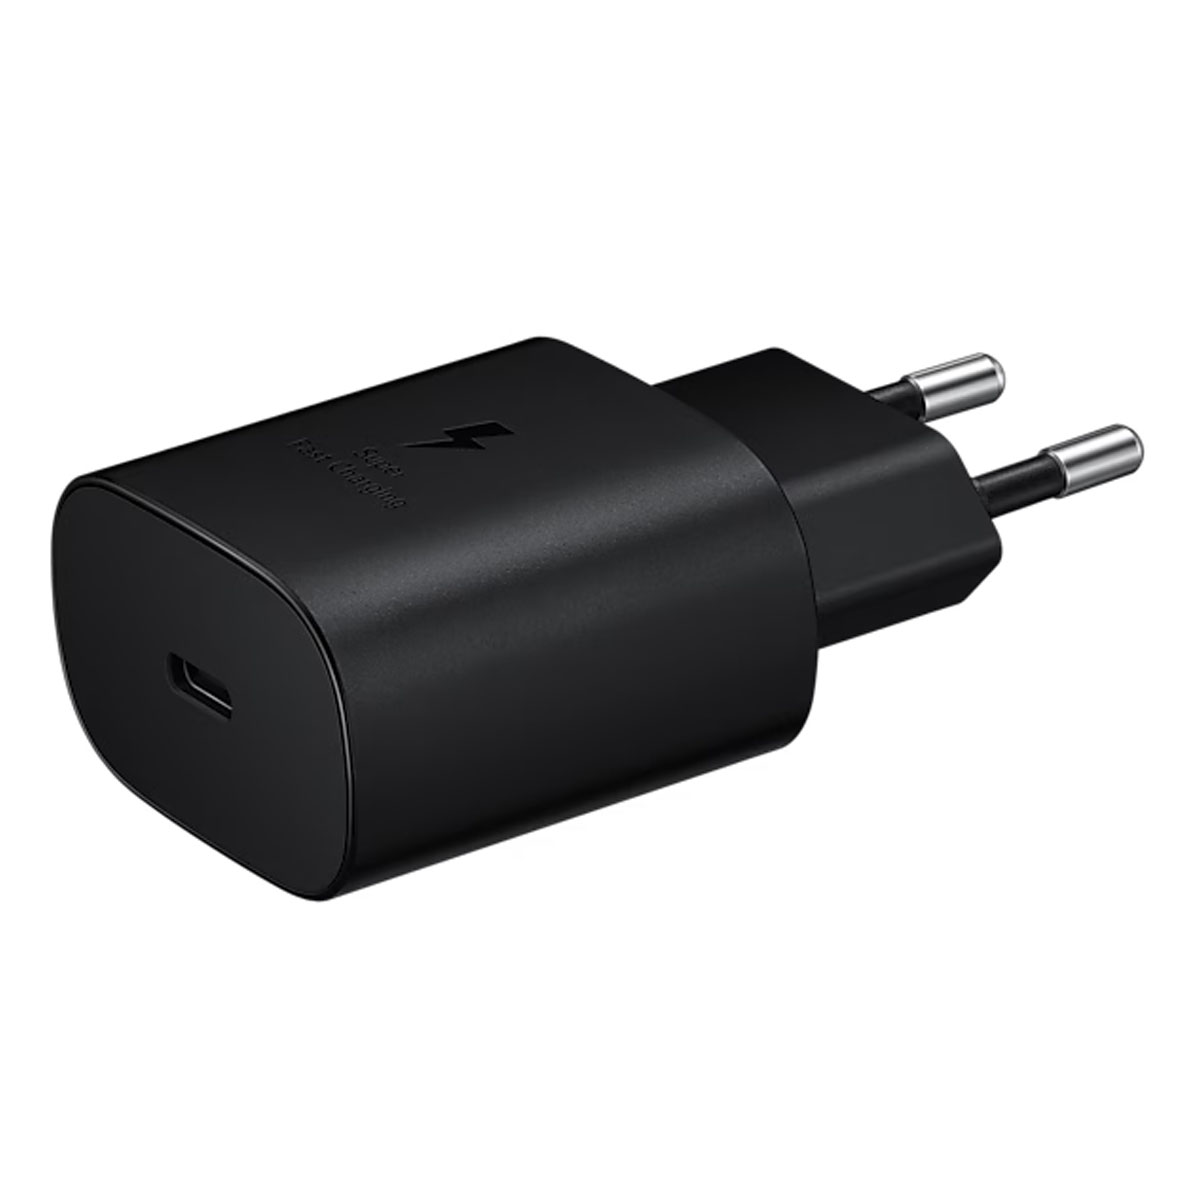 СЗУ (Сетевое зарядное устройство) EP-TA800, 25W, 1 USB Type C, цвет черный